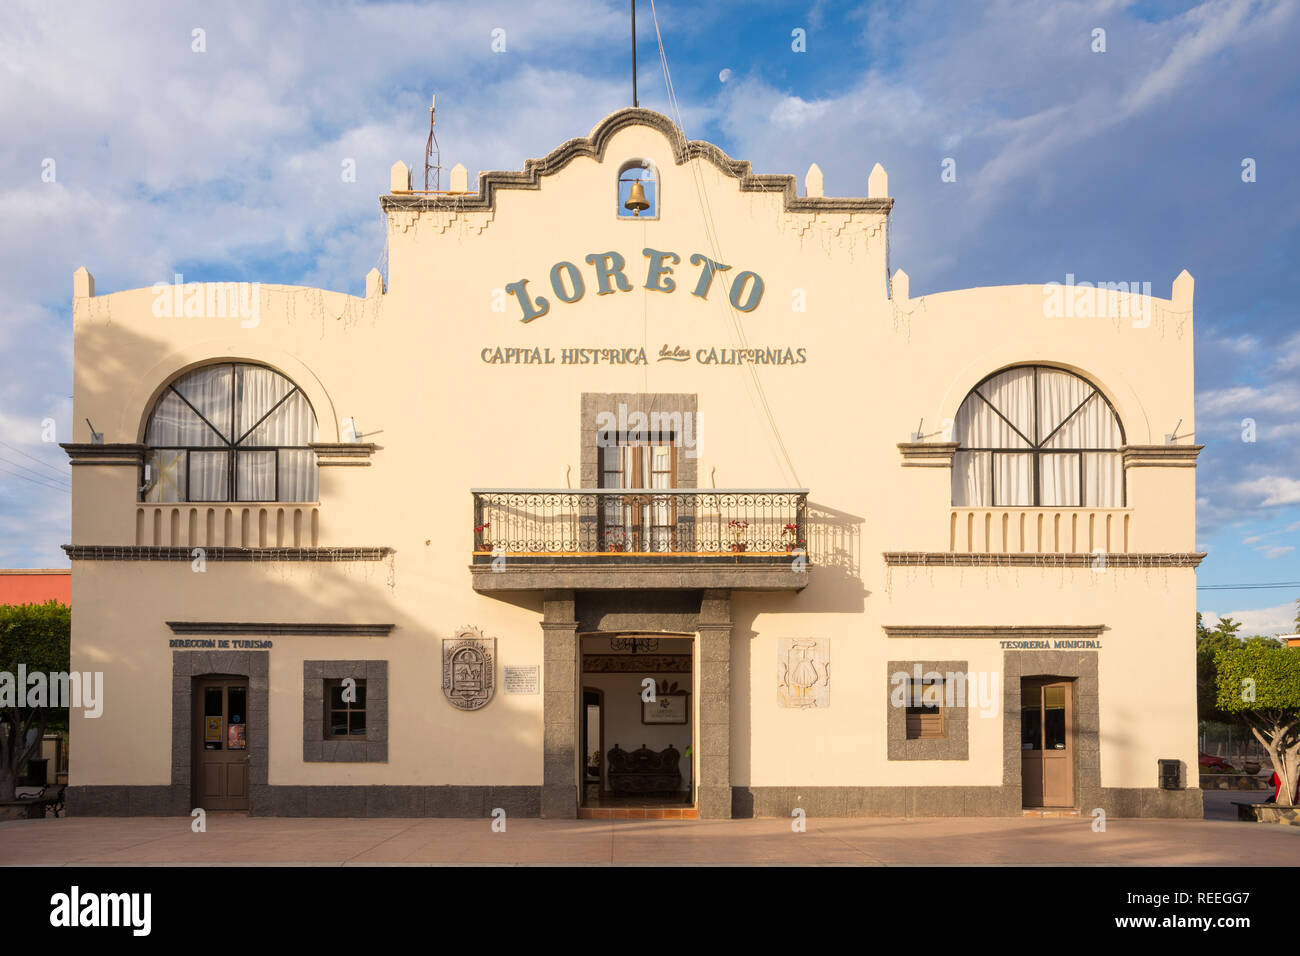 Rathaus am Plaza Benito Juarez in Loreto, Baja California Sur, Mexiko. Loreto war die erste spanische Kolonialstadt in Baja und die ursprüngliche Capitol-o Stockfoto